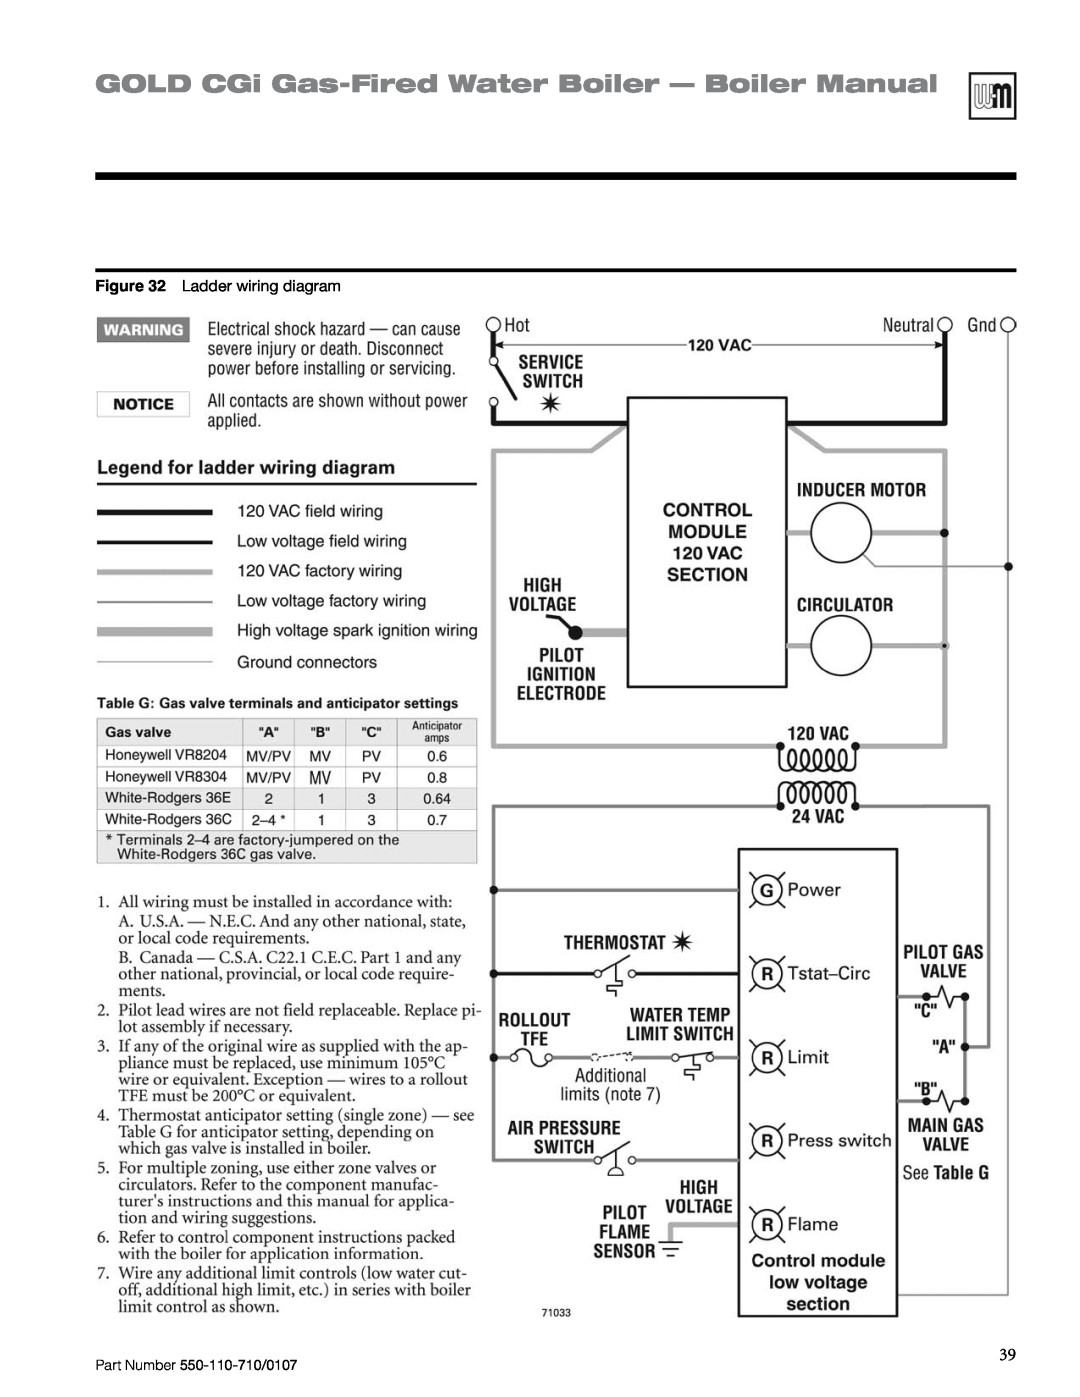 Weil-McLain Series 2 manual GOLD CGi Gas-FiredWater Boiler — Boiler Manual, Ladder wiring diagram 